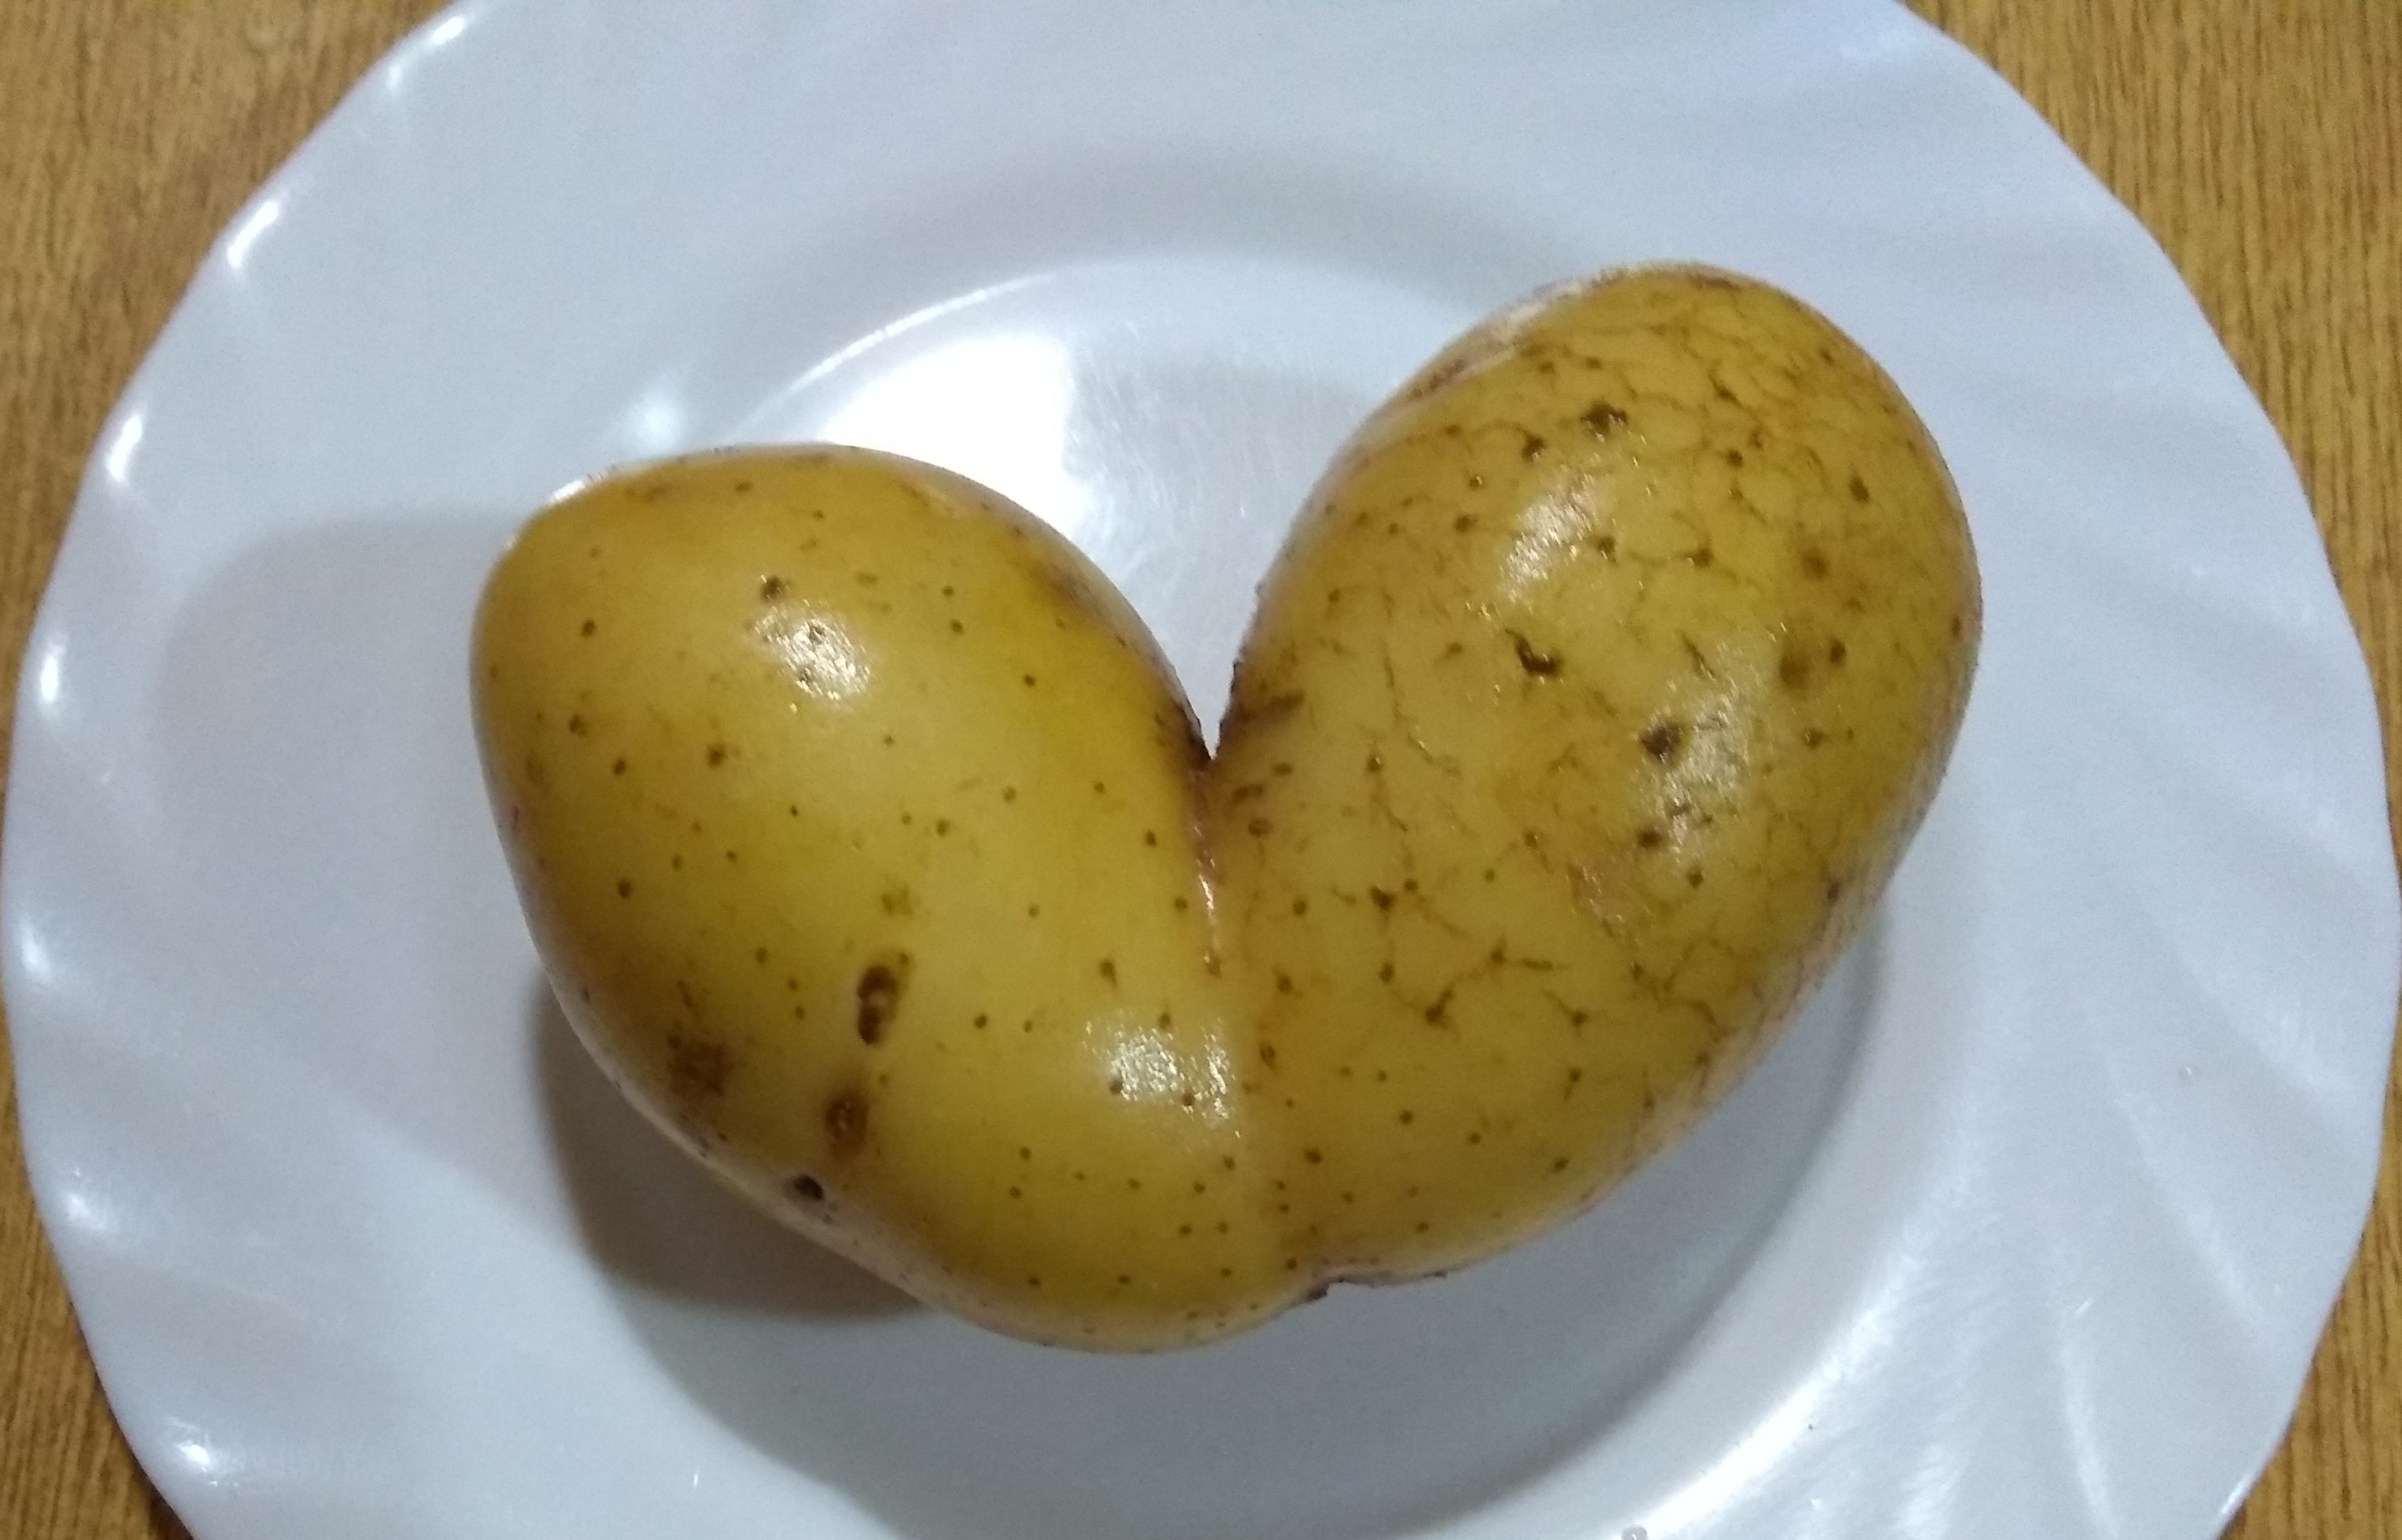 Patata con forma de corazón